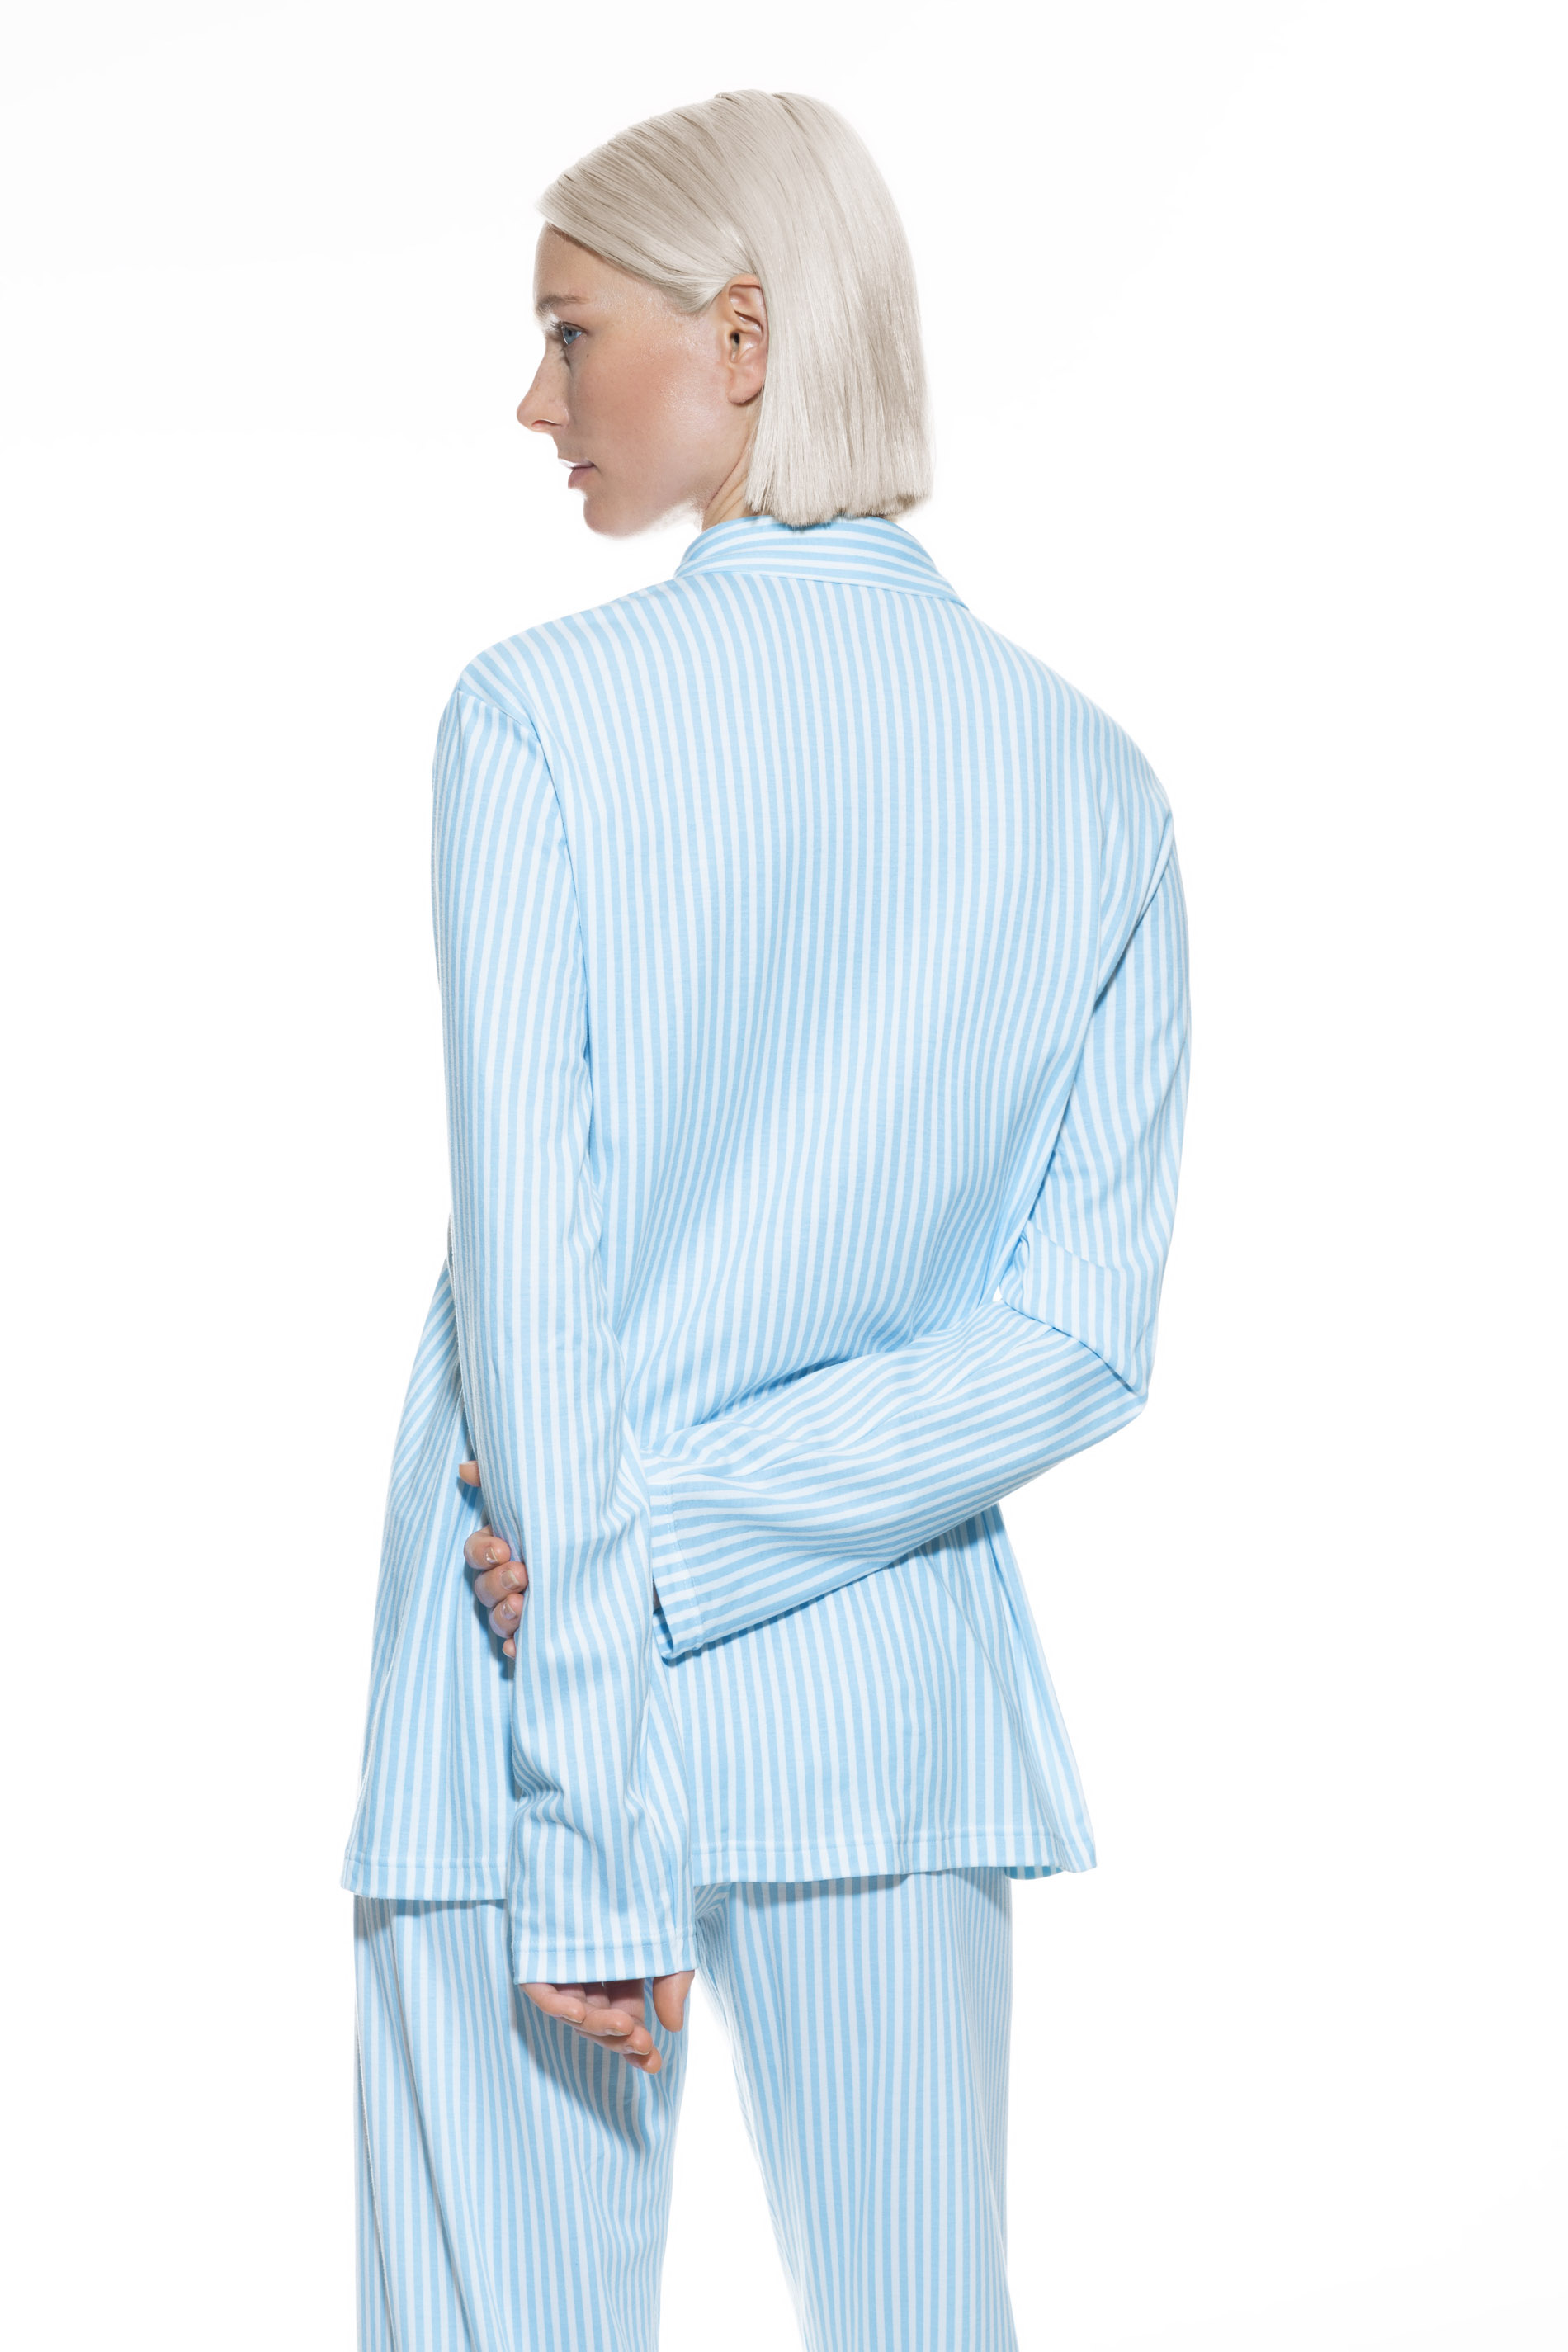 Pyjama Shirt Dream Blue Serie Sleepsation Rückansicht | mey®